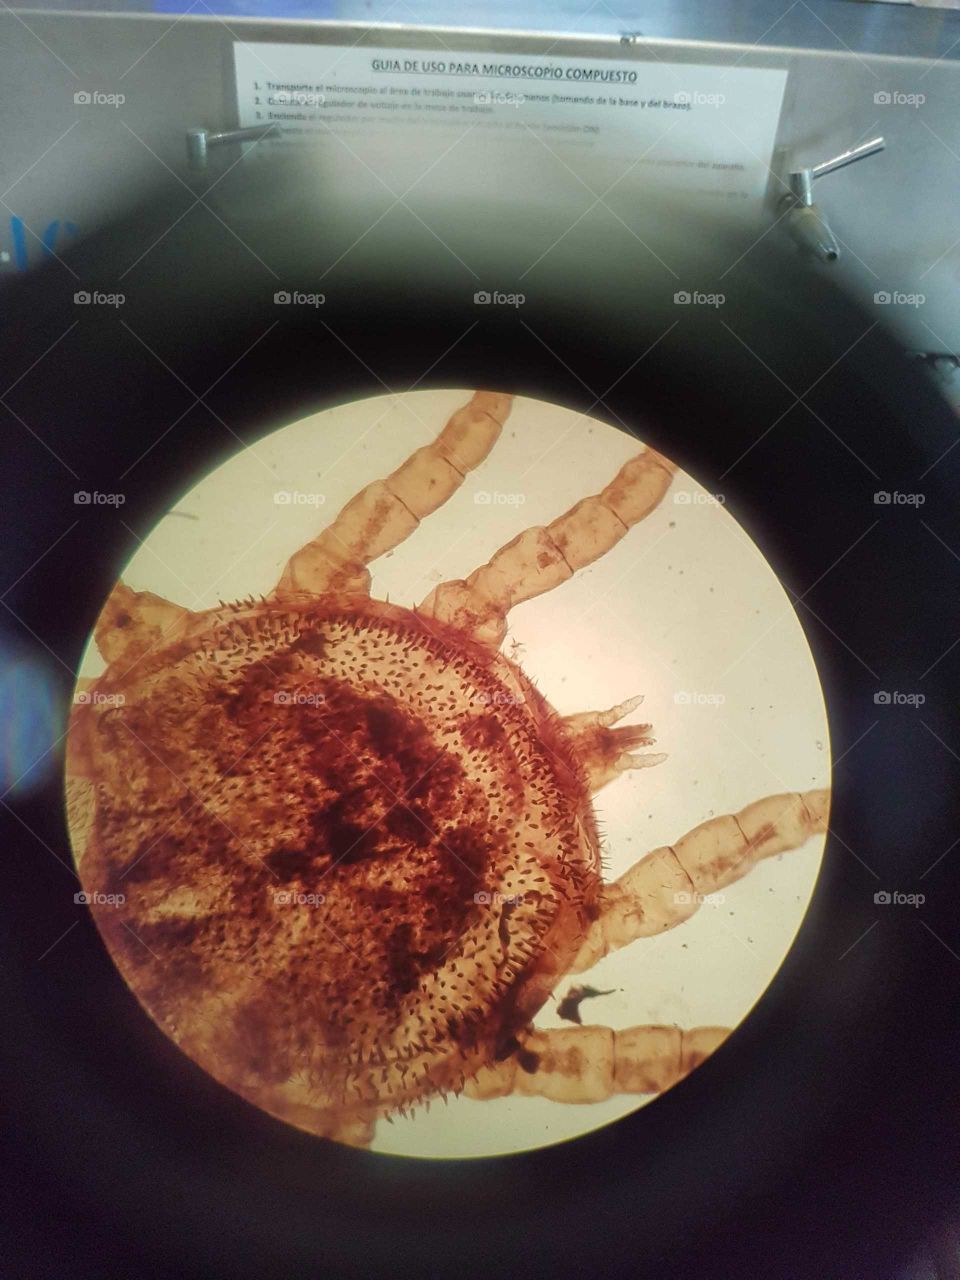 Psoroptes cuniculi, mite. Microscopic picture.